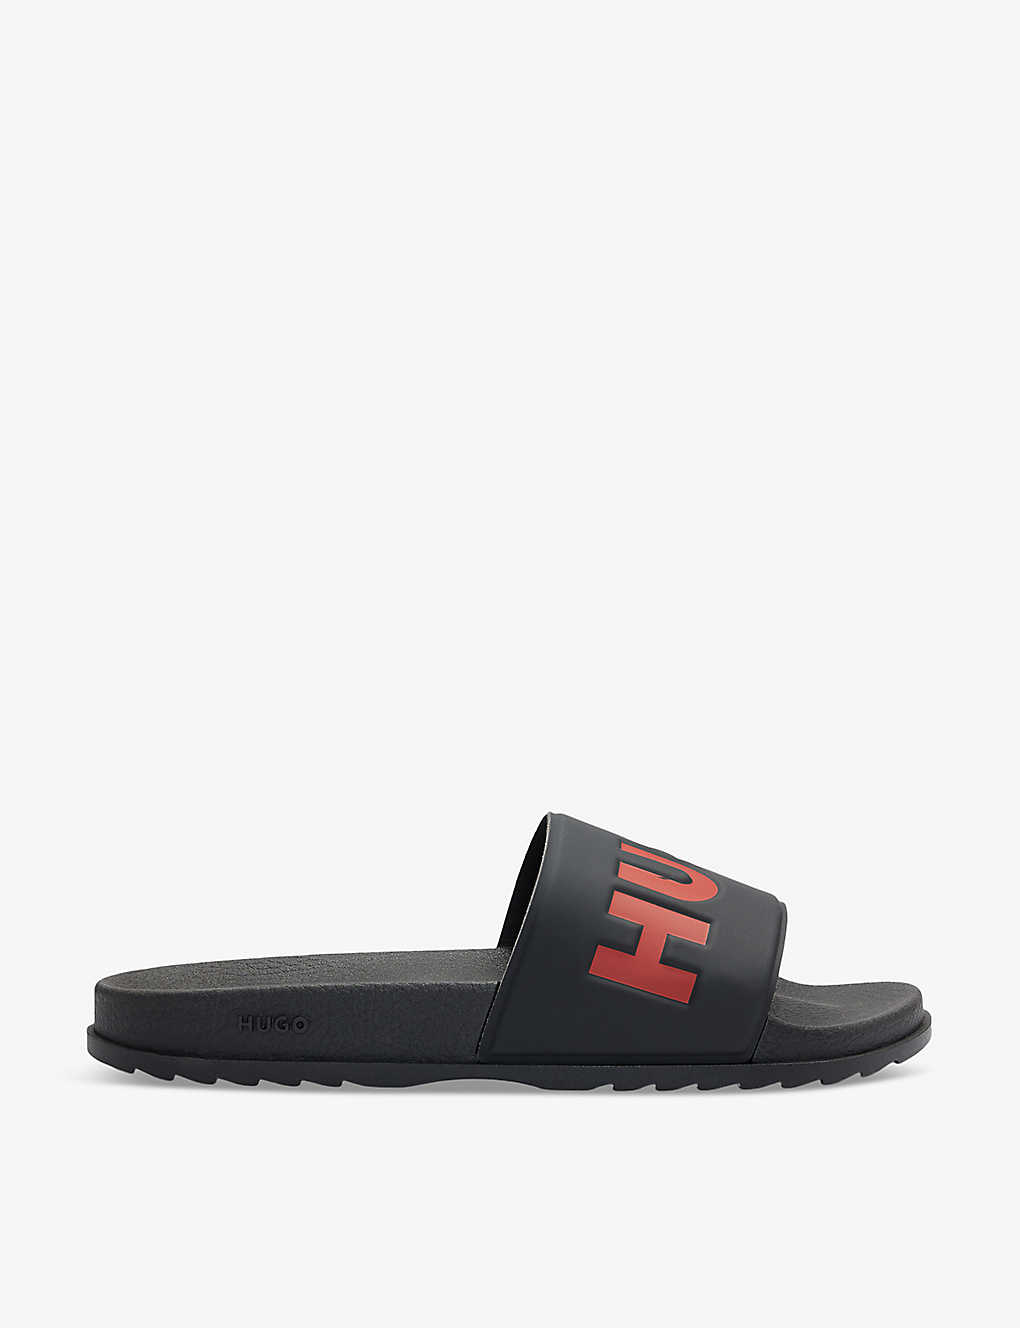 Hugo Man Sandals Black Size 12 Rubber